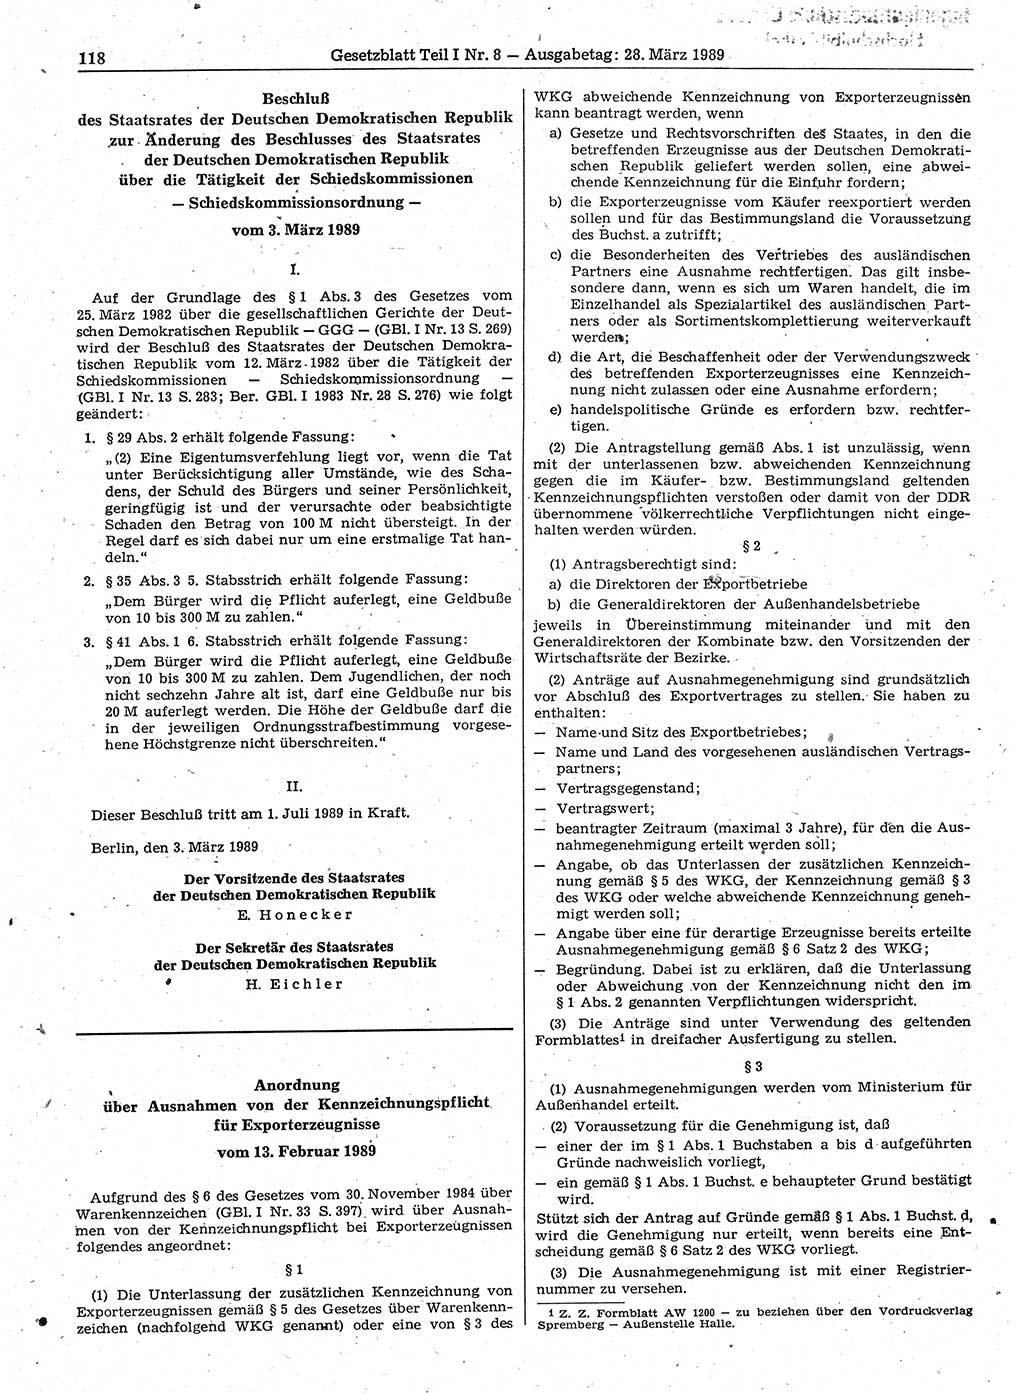 Gesetzblatt (GBl.) der Deutschen Demokratischen Republik (DDR) Teil Ⅰ 1989, Seite 118 (GBl. DDR Ⅰ 1989, S. 118)